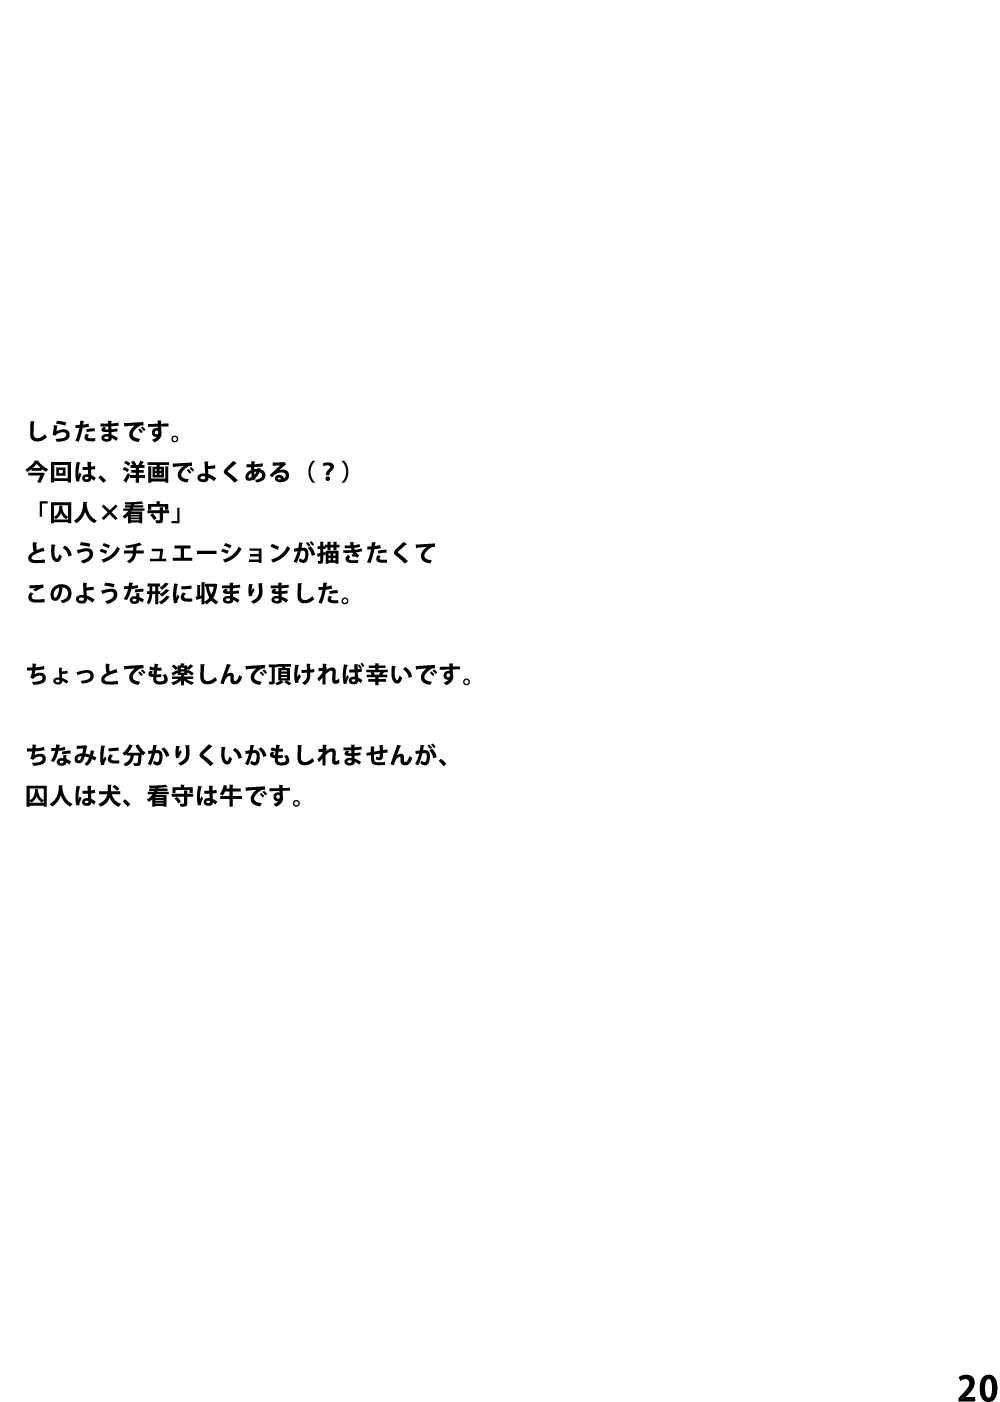 [Rabbit Zone (Shiratama)] Momoiro Prison [ラビット空間 (しらたま)] ももいろプリズン